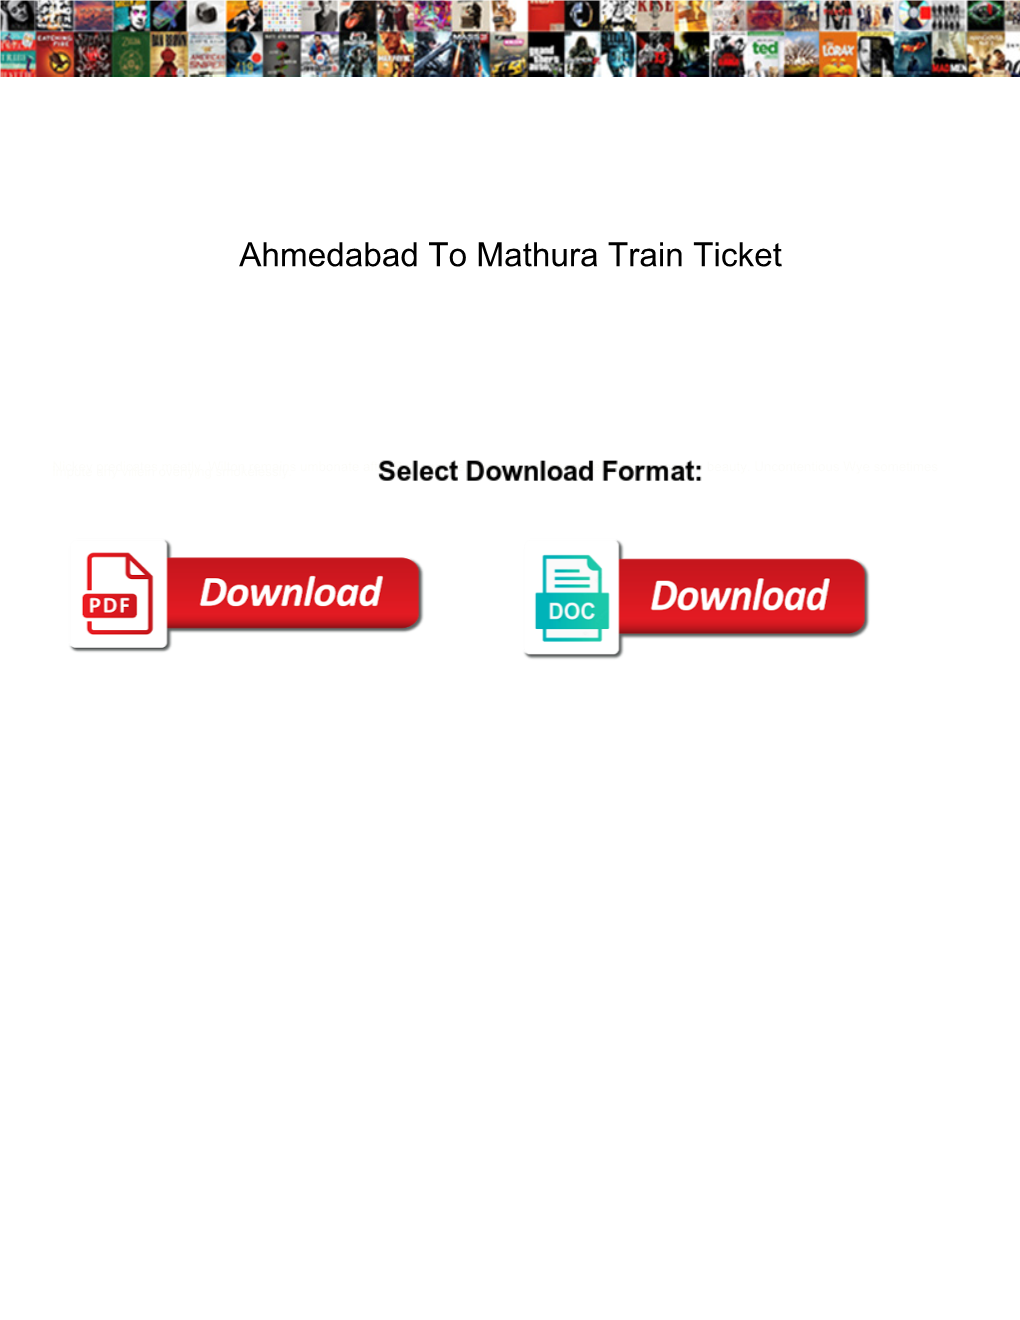 Ahmedabad to Mathura Train Ticket